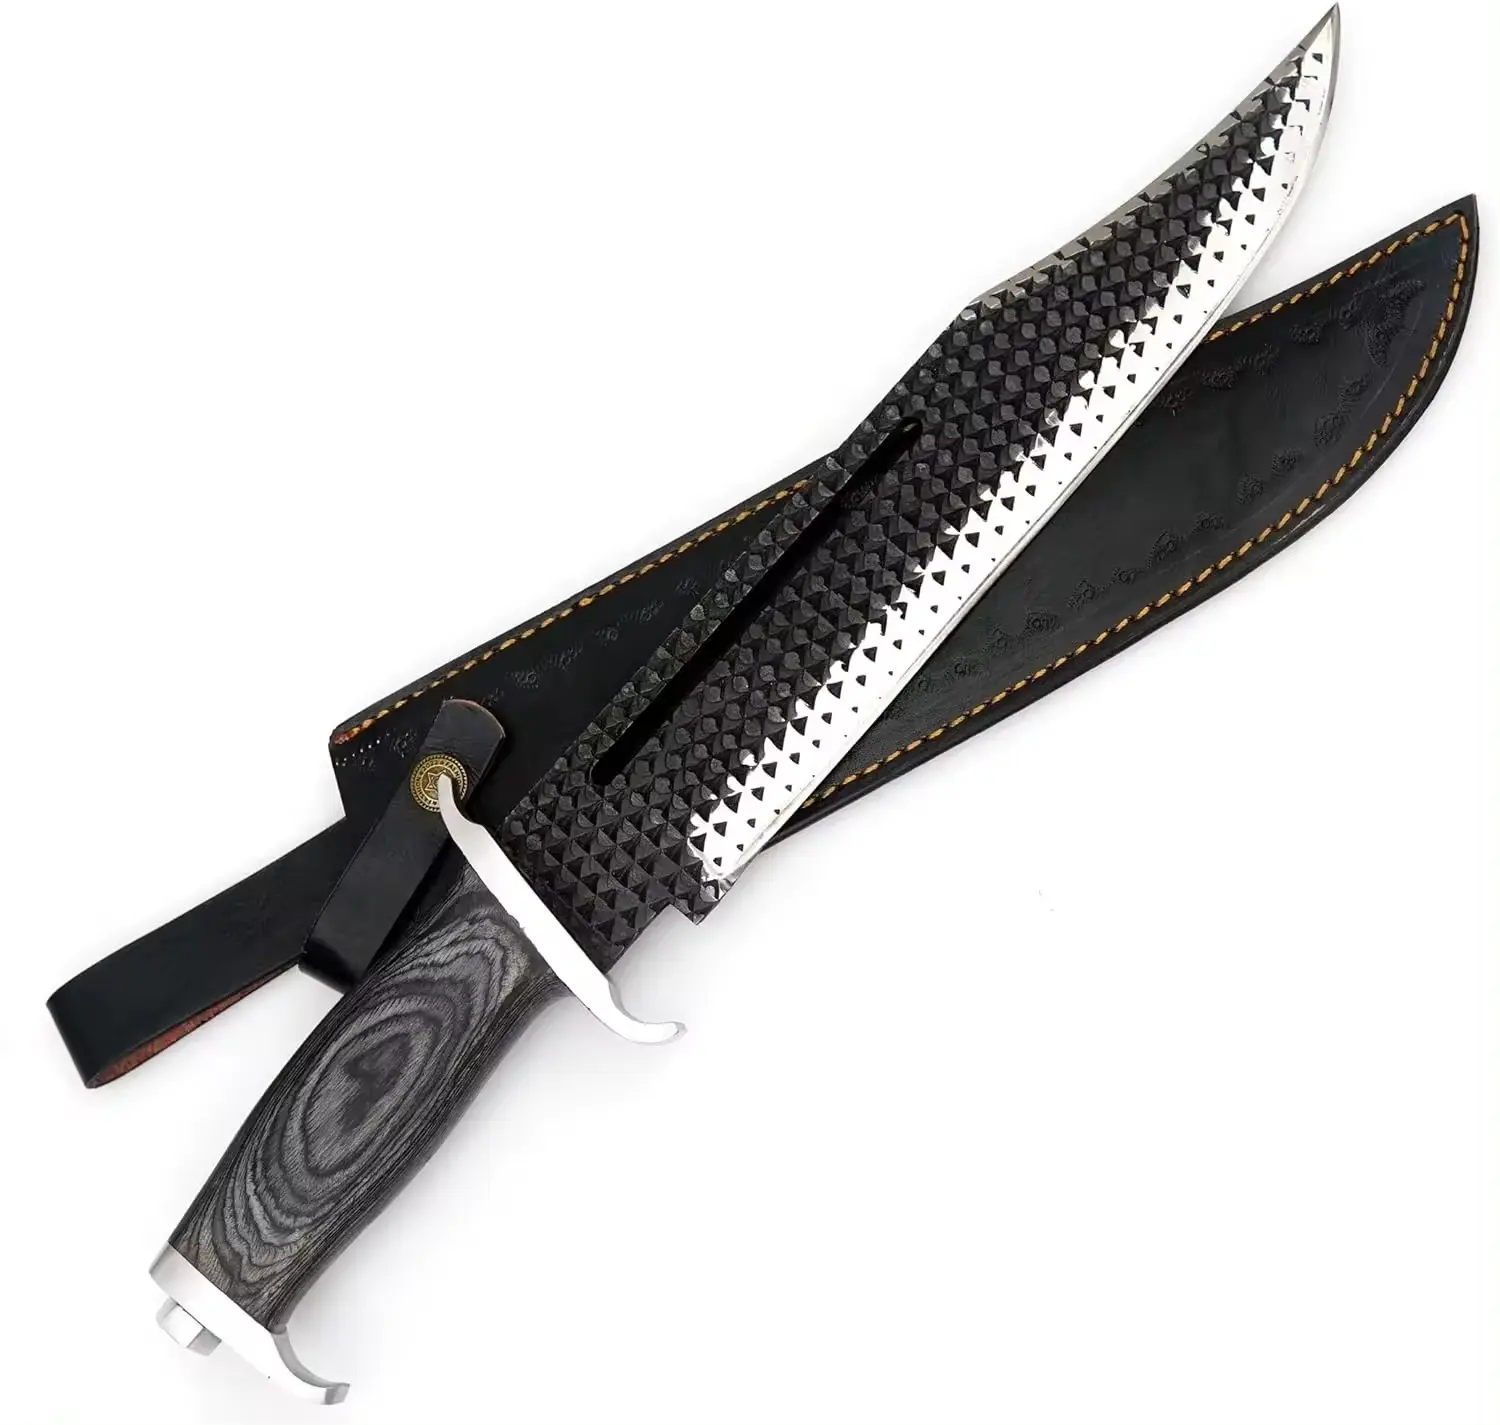 Handgefertigtes Rambo 3 Bowie-Messer aus kohlenstoffstahl mit Pukka-Hohnhandgriff und Lederhülle Wikingermesser Outdoor-Messer Silberguard